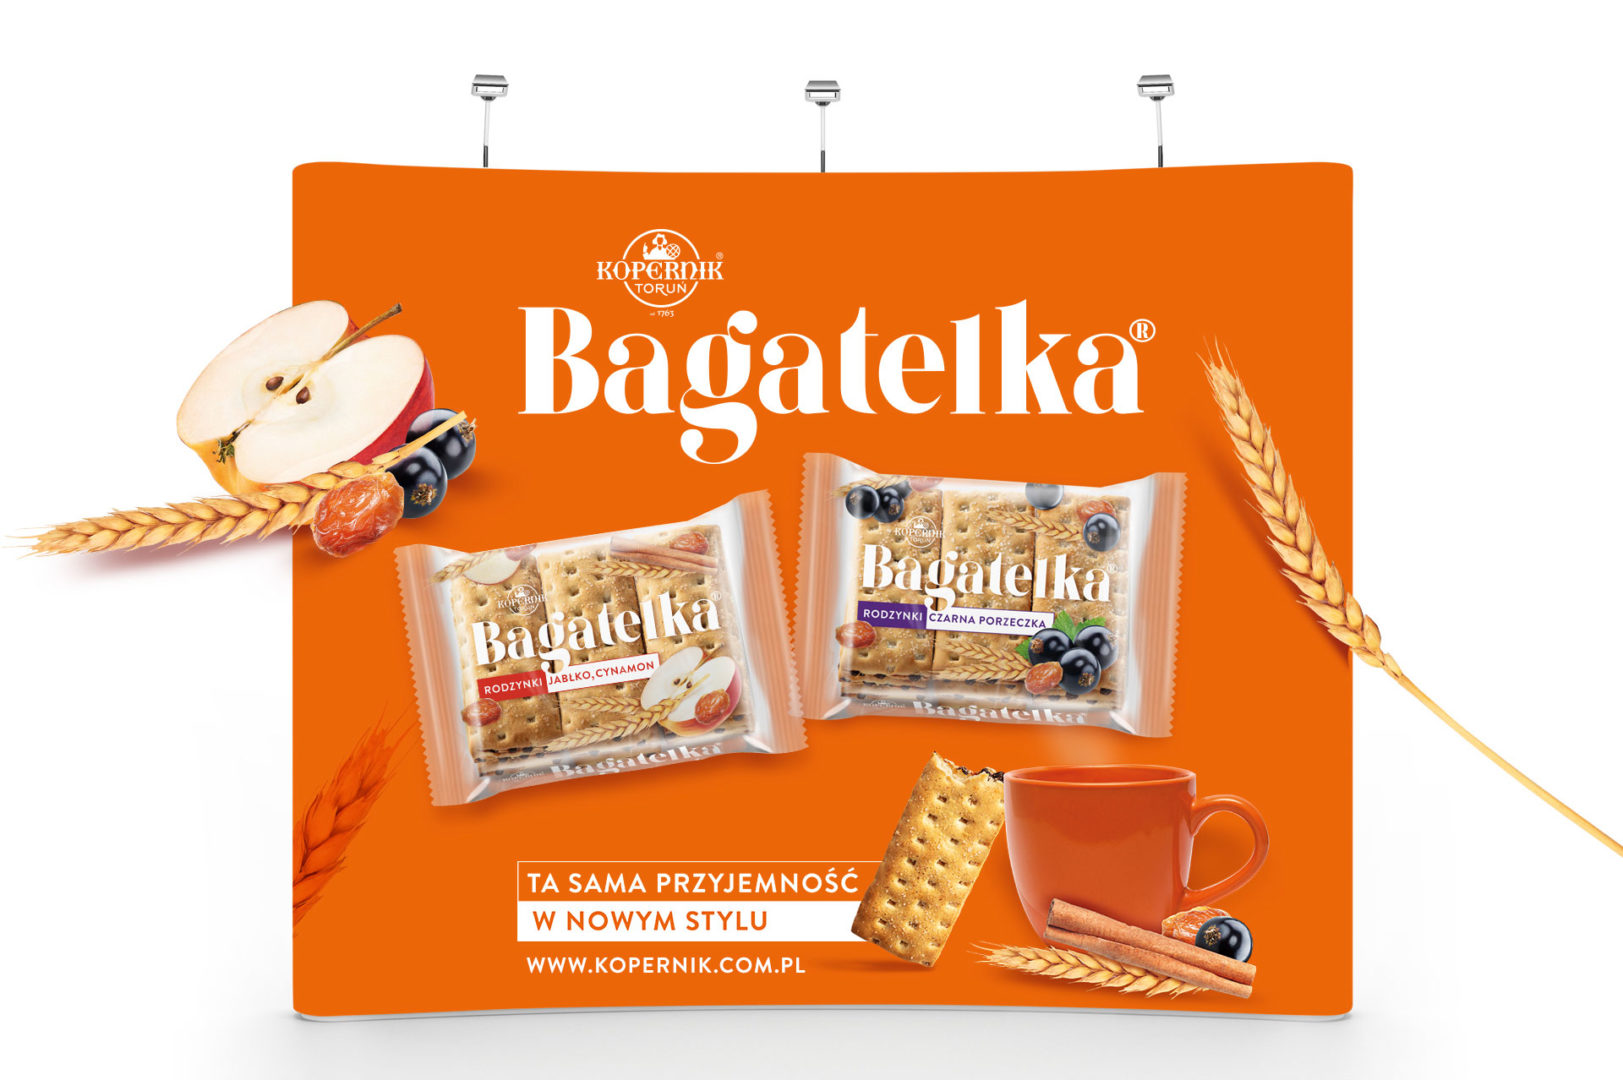 BAGATELKA_projekt_opakowania_branding_packaging_10